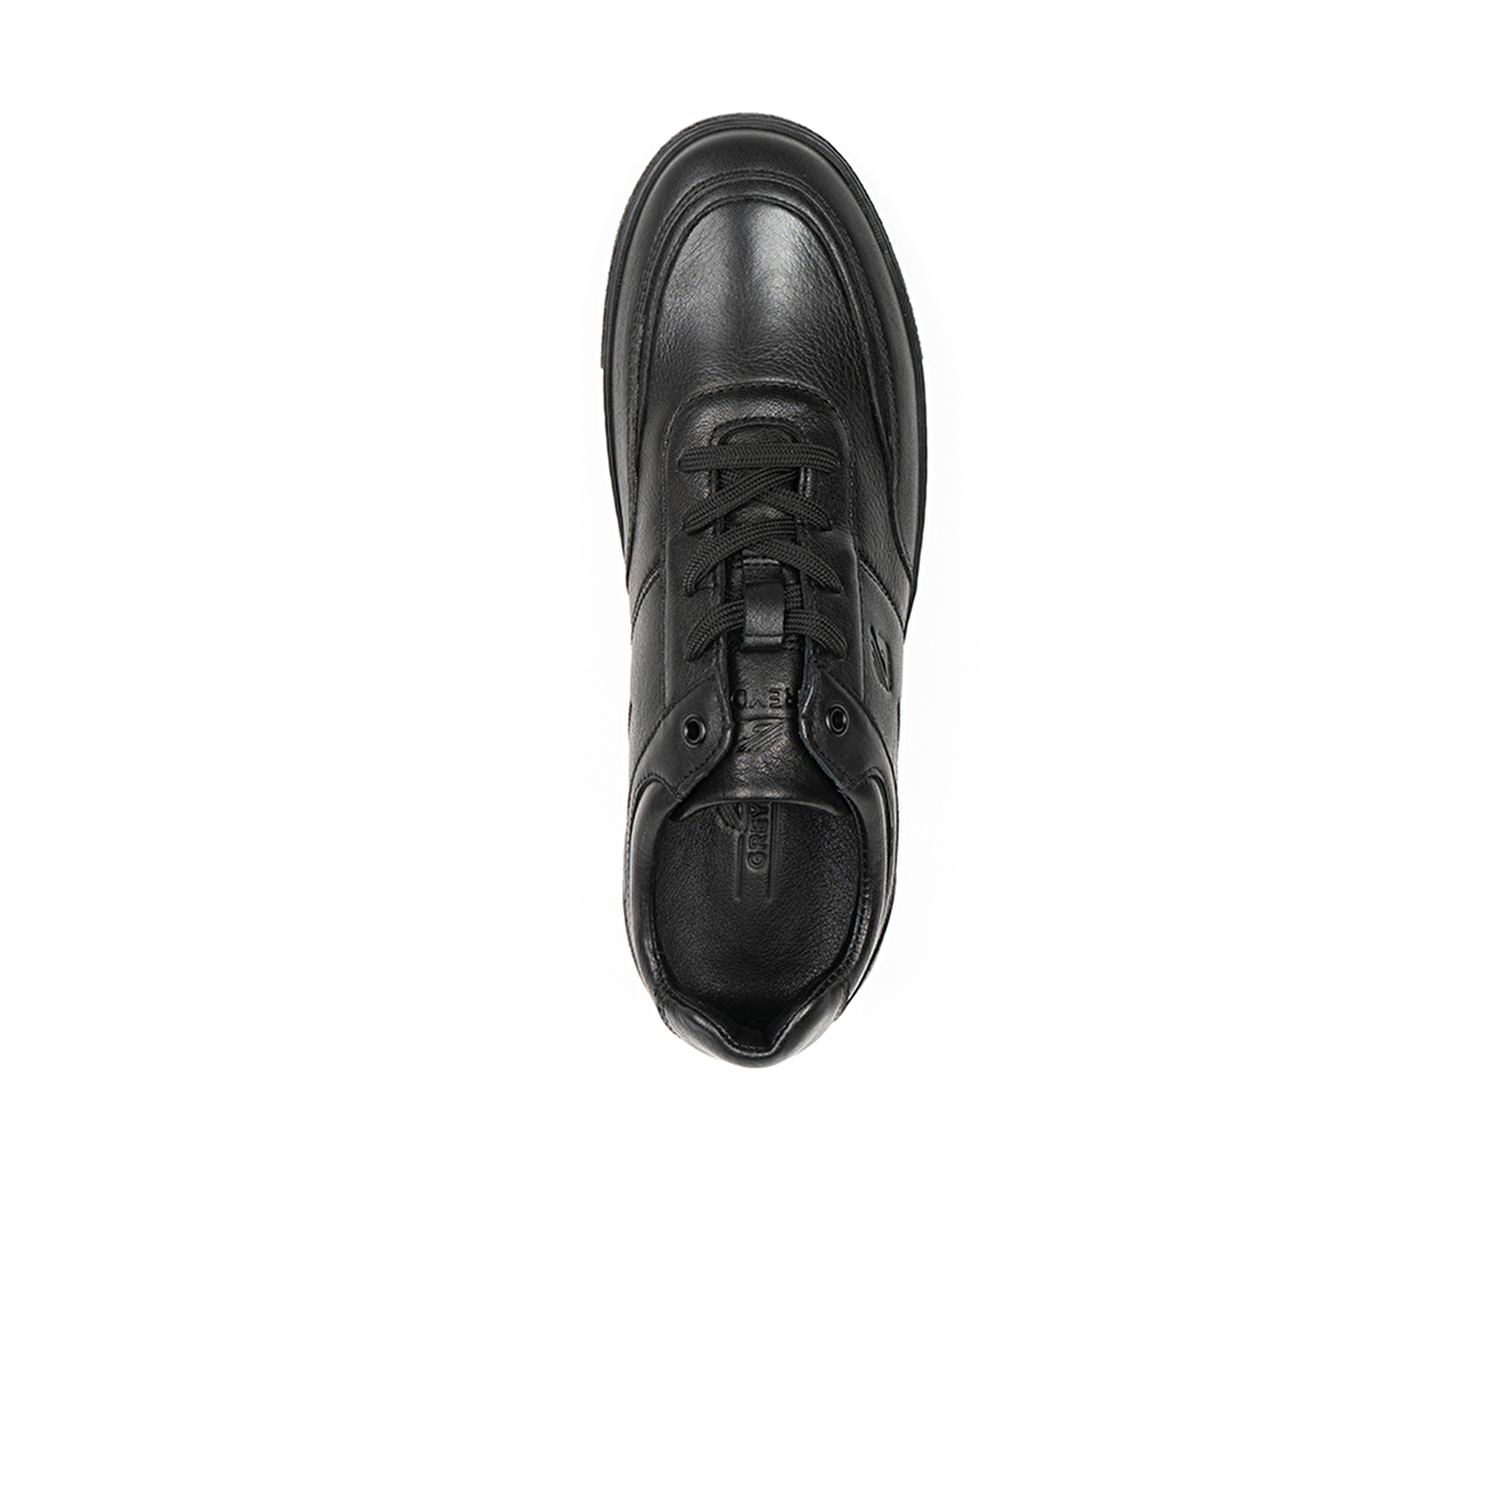 Erkek Ayakkabı Siyah 123-5